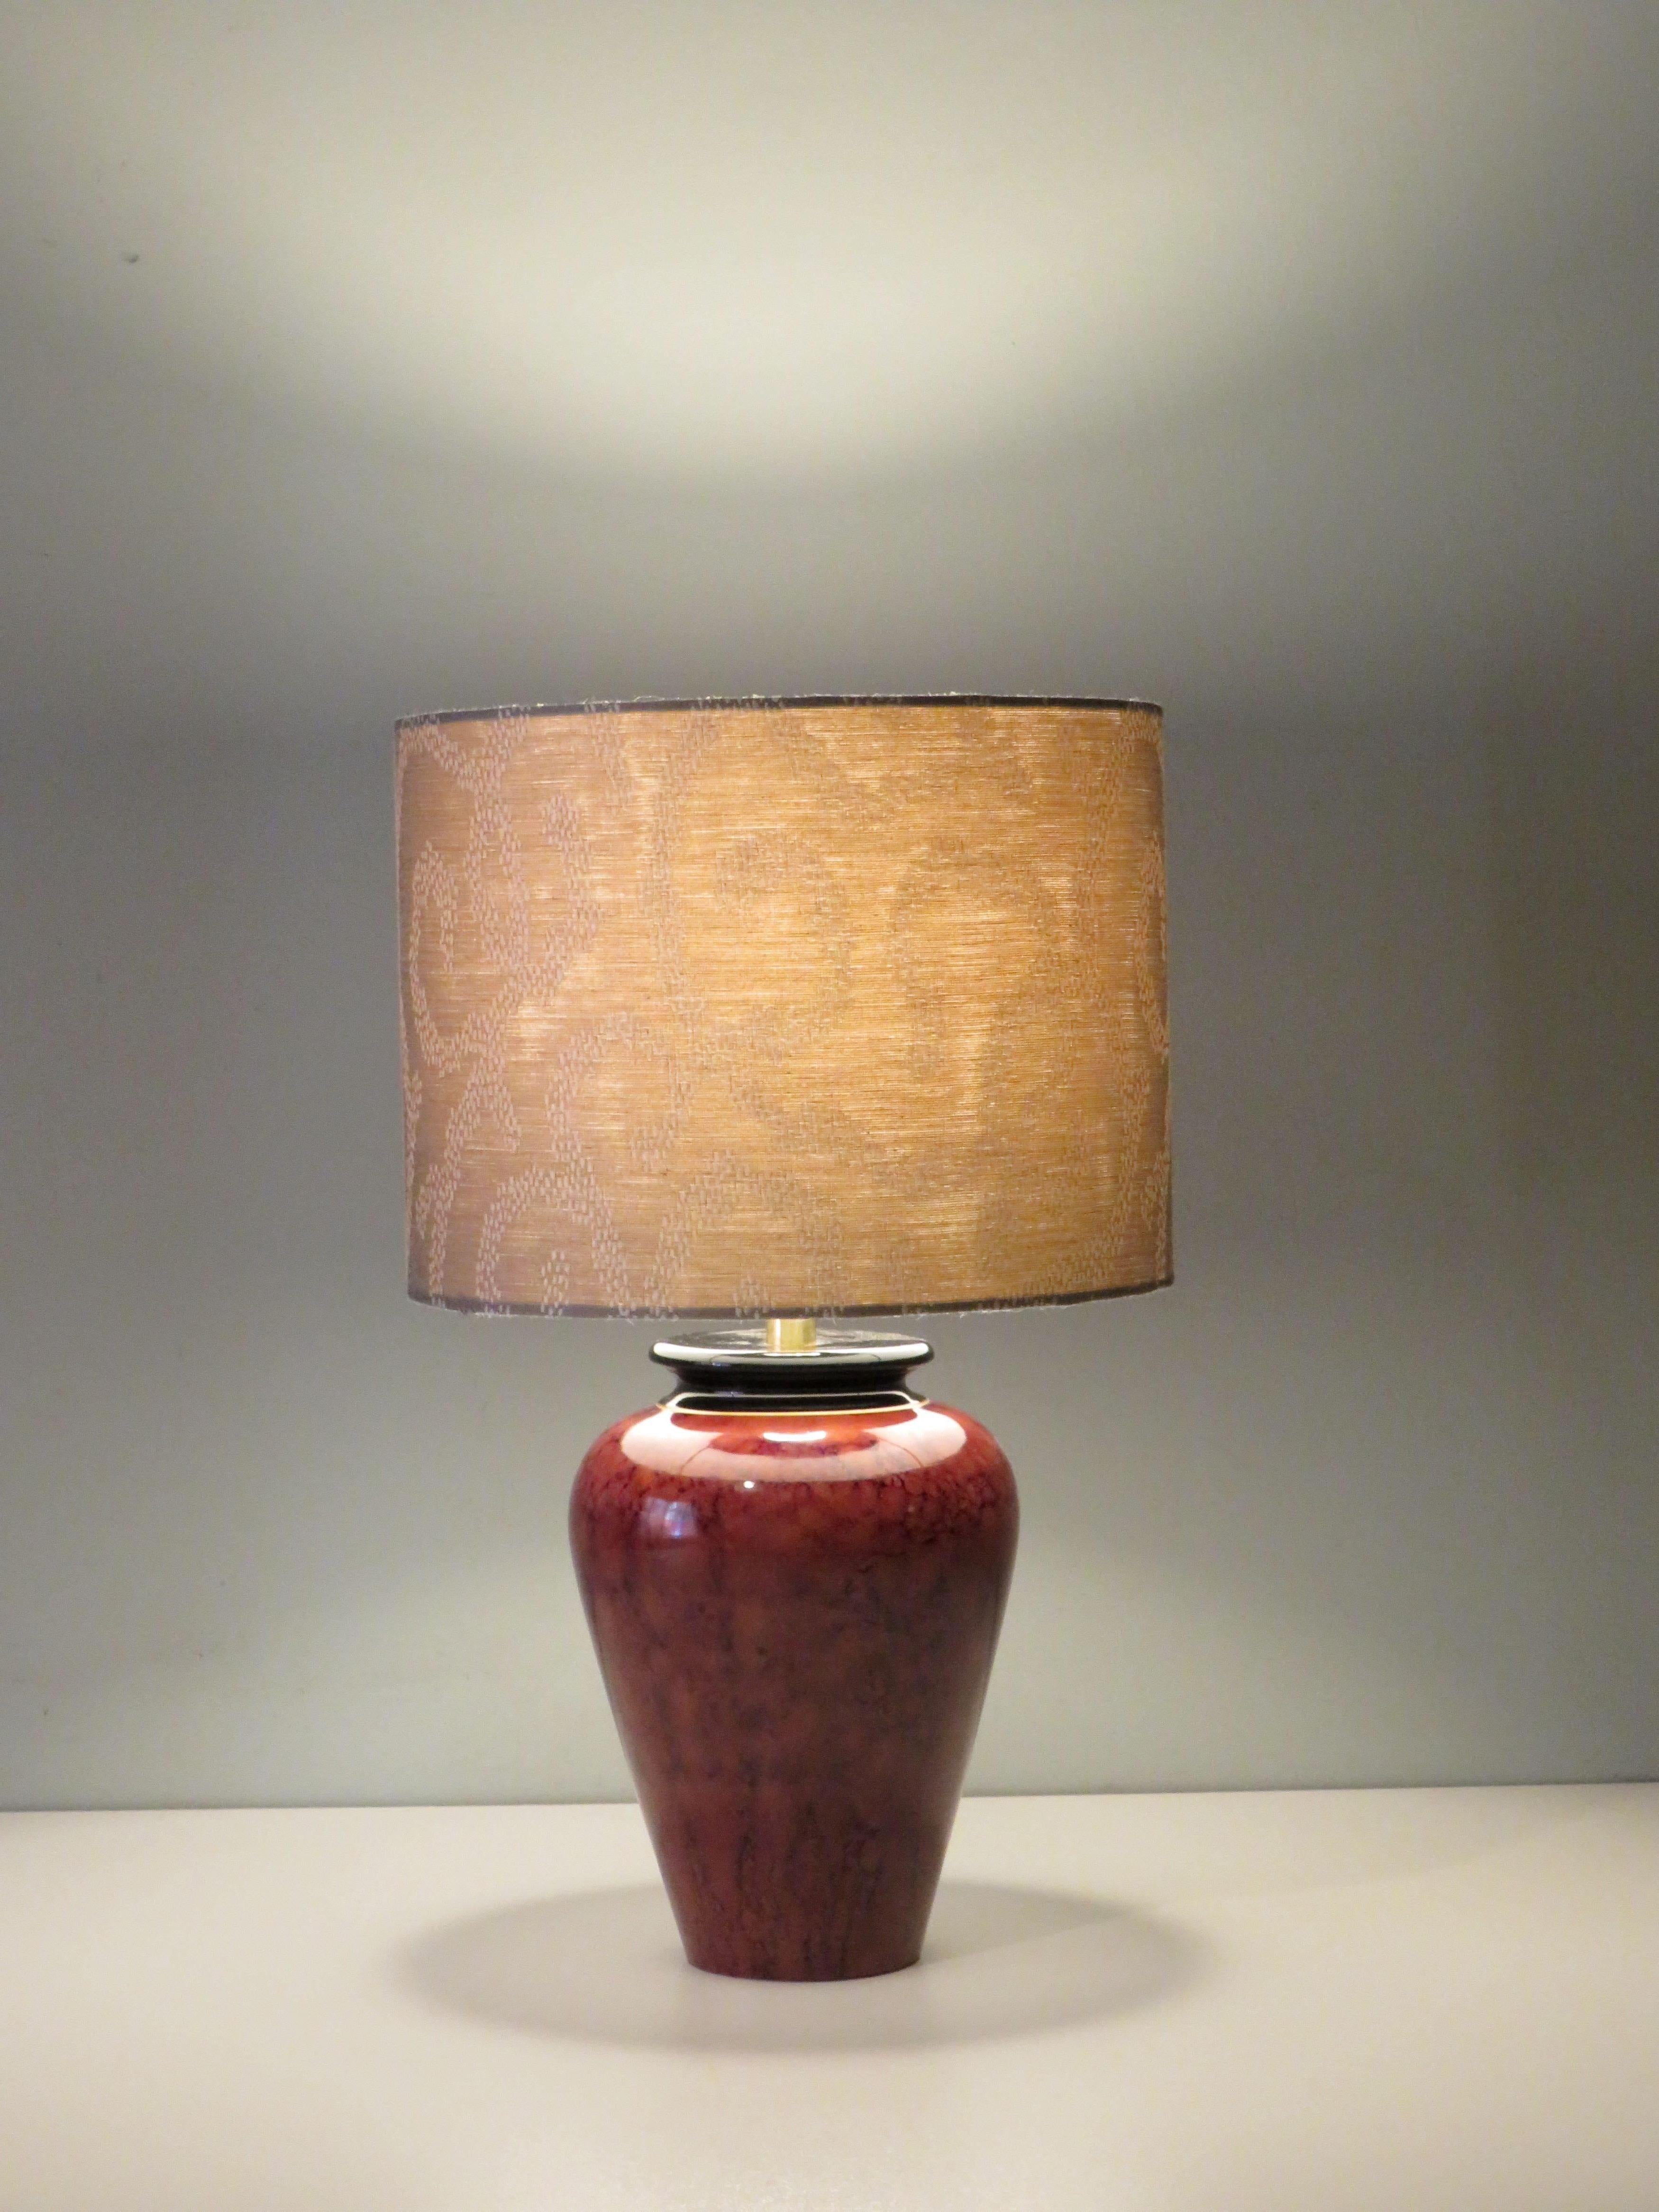 Pied de lampe vintage signé Louis Drimmer avec abat-jour sur mesure en tissu jacquard couleur sable.
La lampe à poser est dotée d'un cordon de couleur dorée, d'un bouton d'allumage et d'extinction et d'une prise. Il y a un raccord E 27 et la lampe